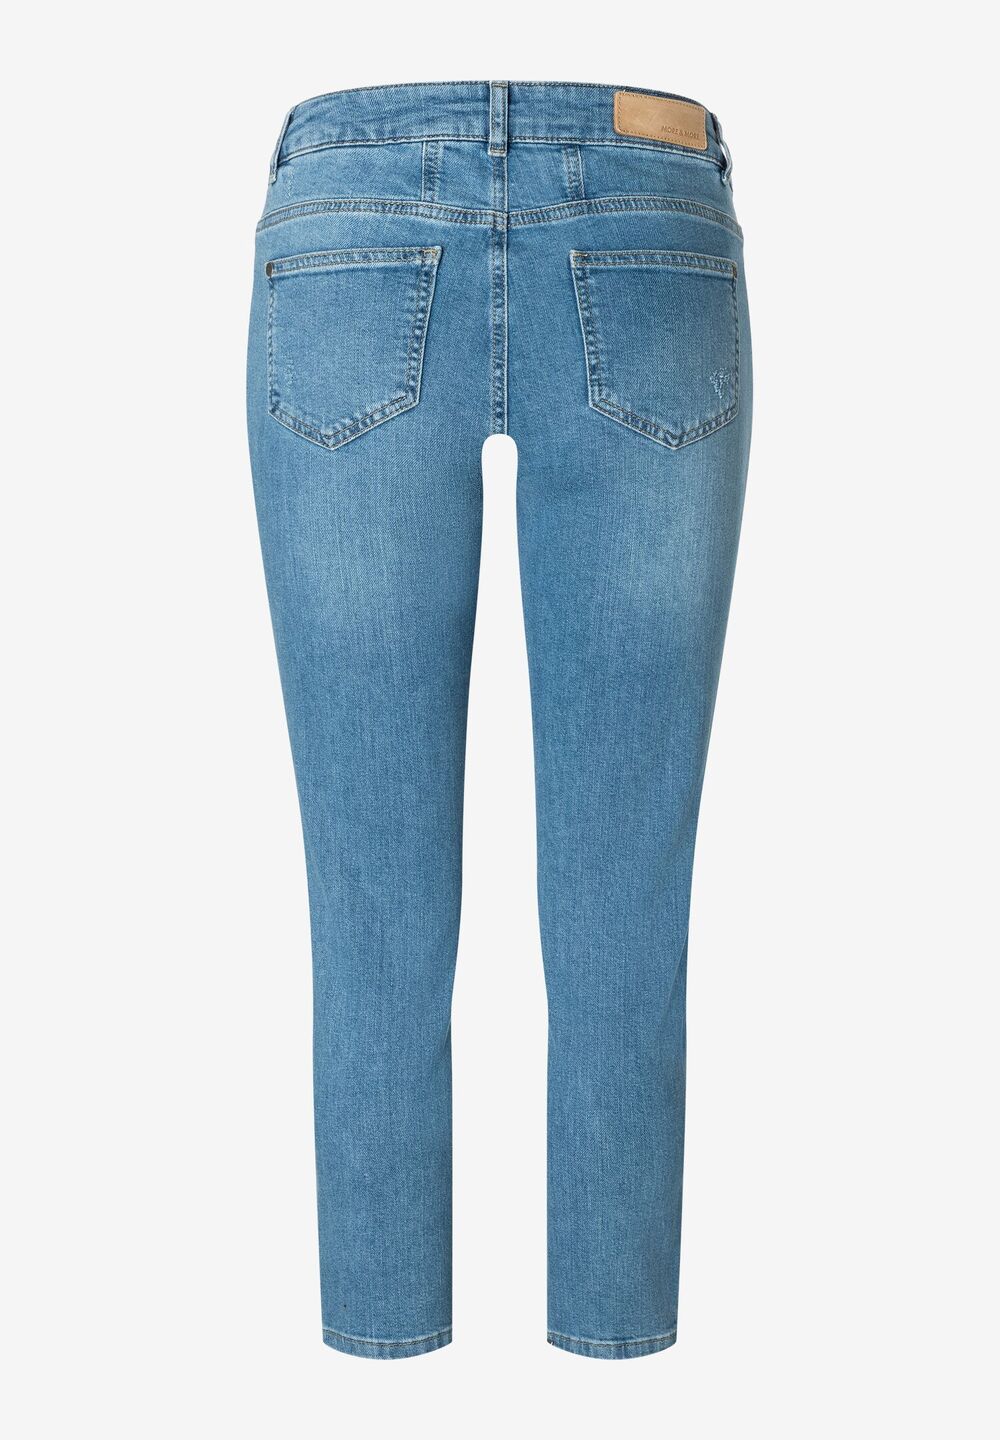 verkürzte Jeans, Sommer-Kollektion, denim Detailansicht 1